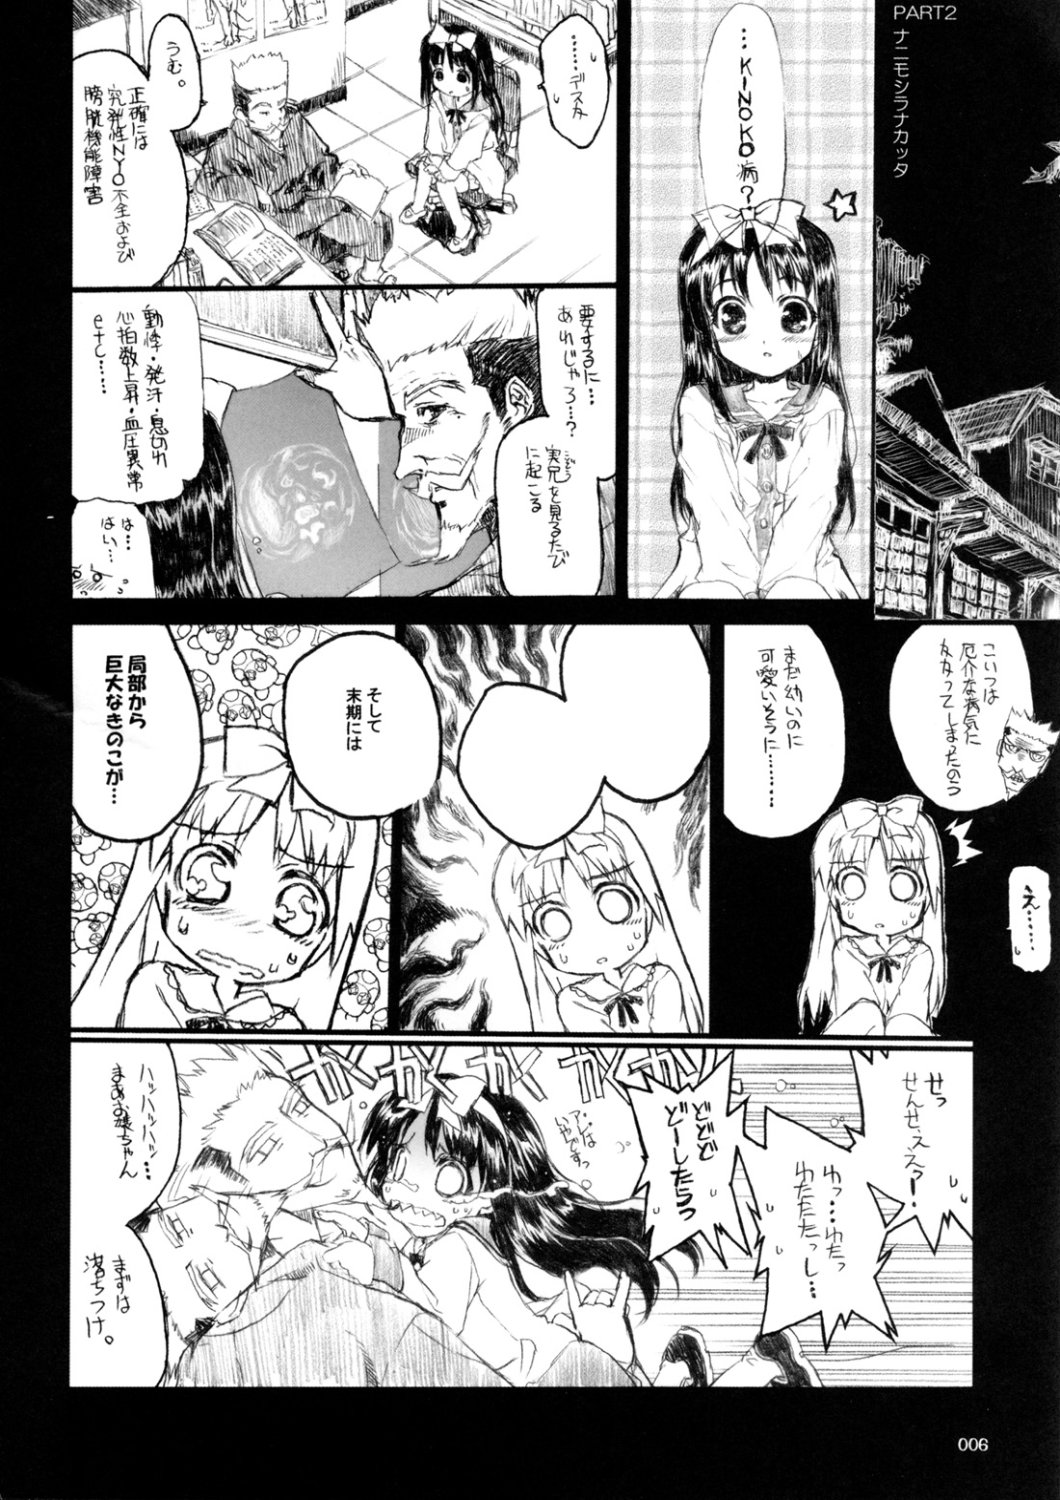 [Inochi no Furusato, Neko-bus Tei, Zangyaku Koui Teate] Akihamania [AKIHA MANIACS] (Tsukihime) page 5 full